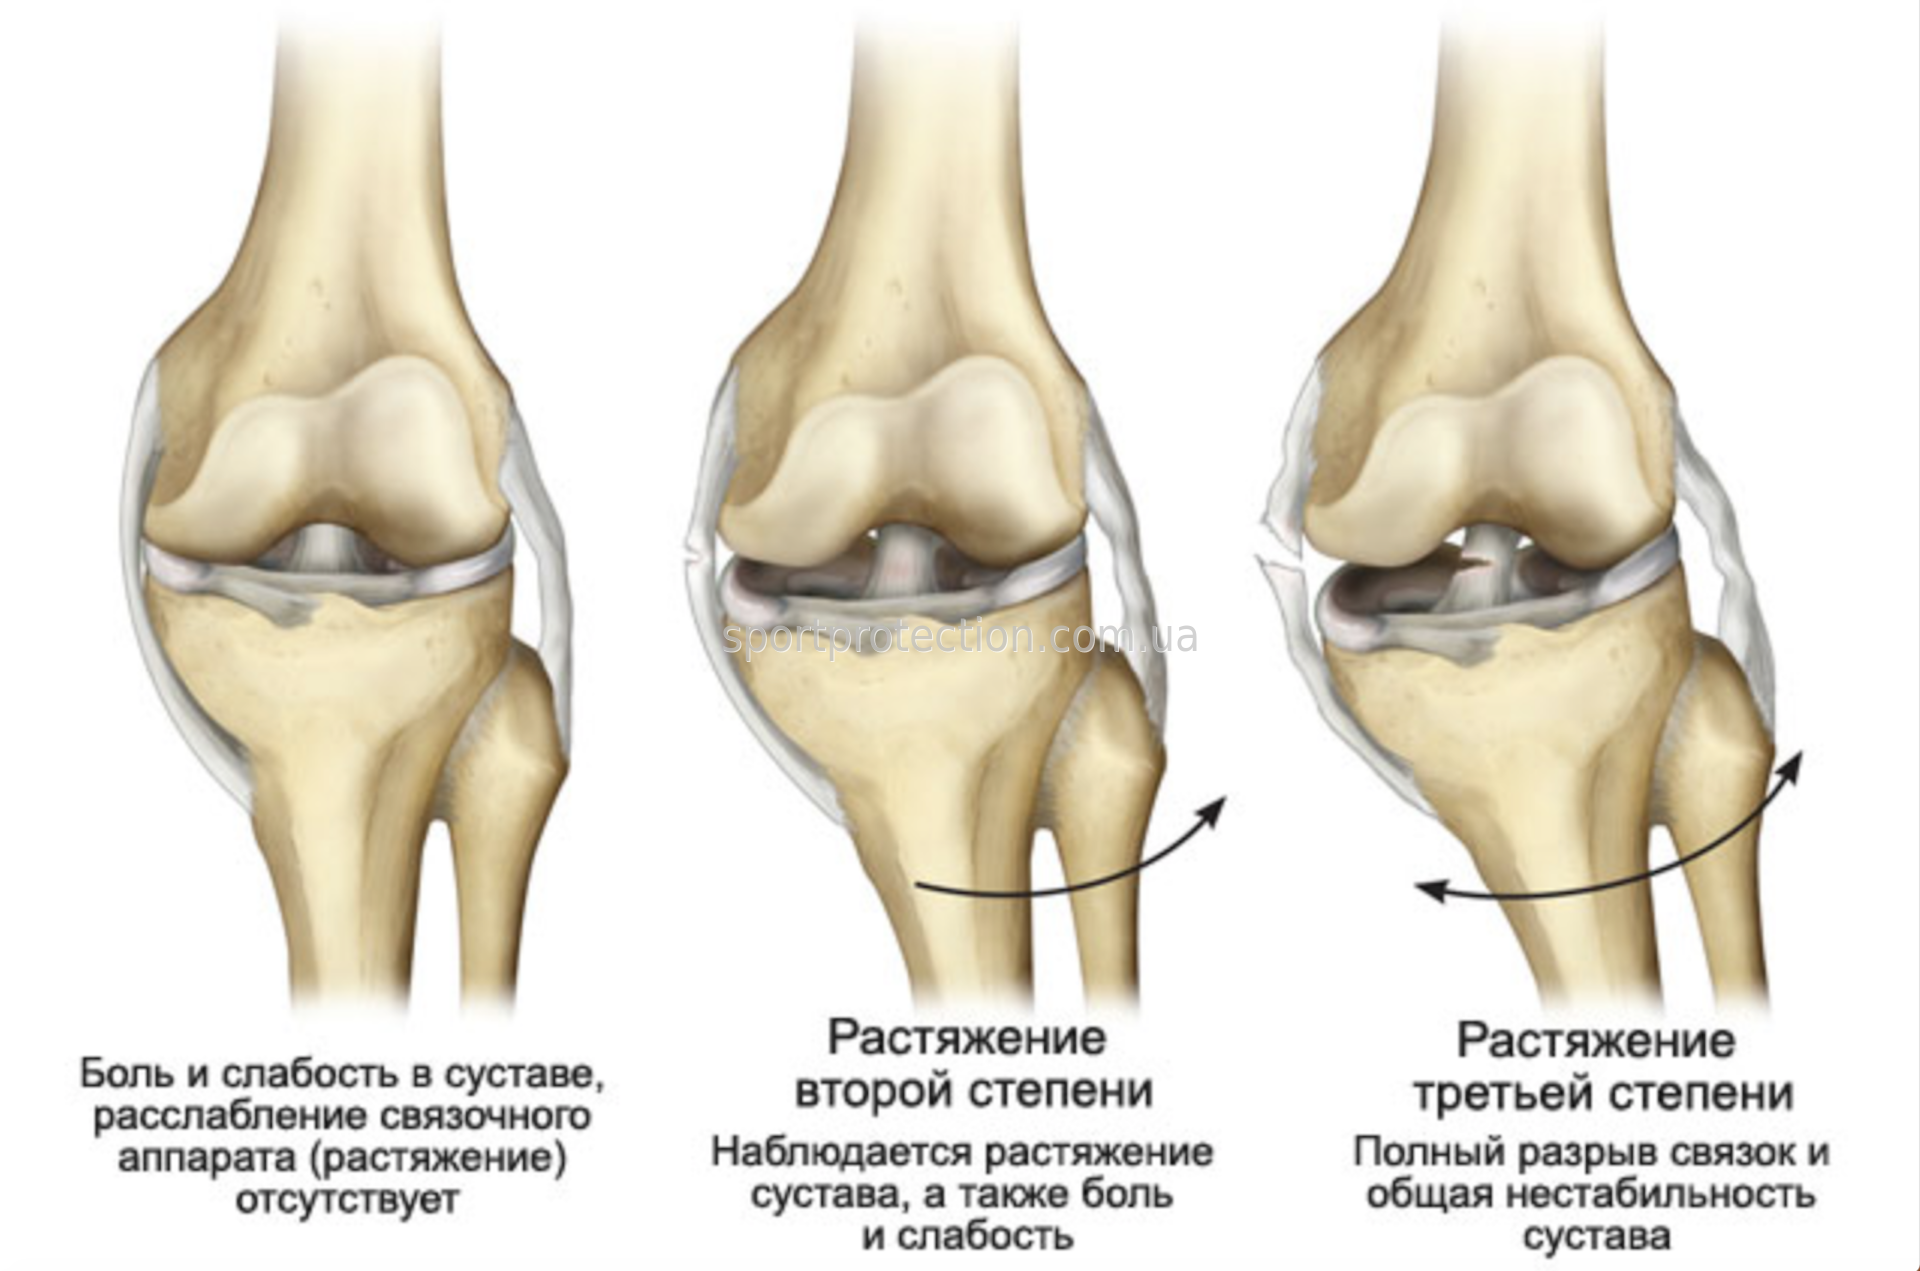 Контузионные изменения кости. Ушиб повреждение связок колена. Диагностика повреждений боковых связок коленного сустава. Степени повреждения коленного сустава. Степени разрыва боковой связки коленного сустава.